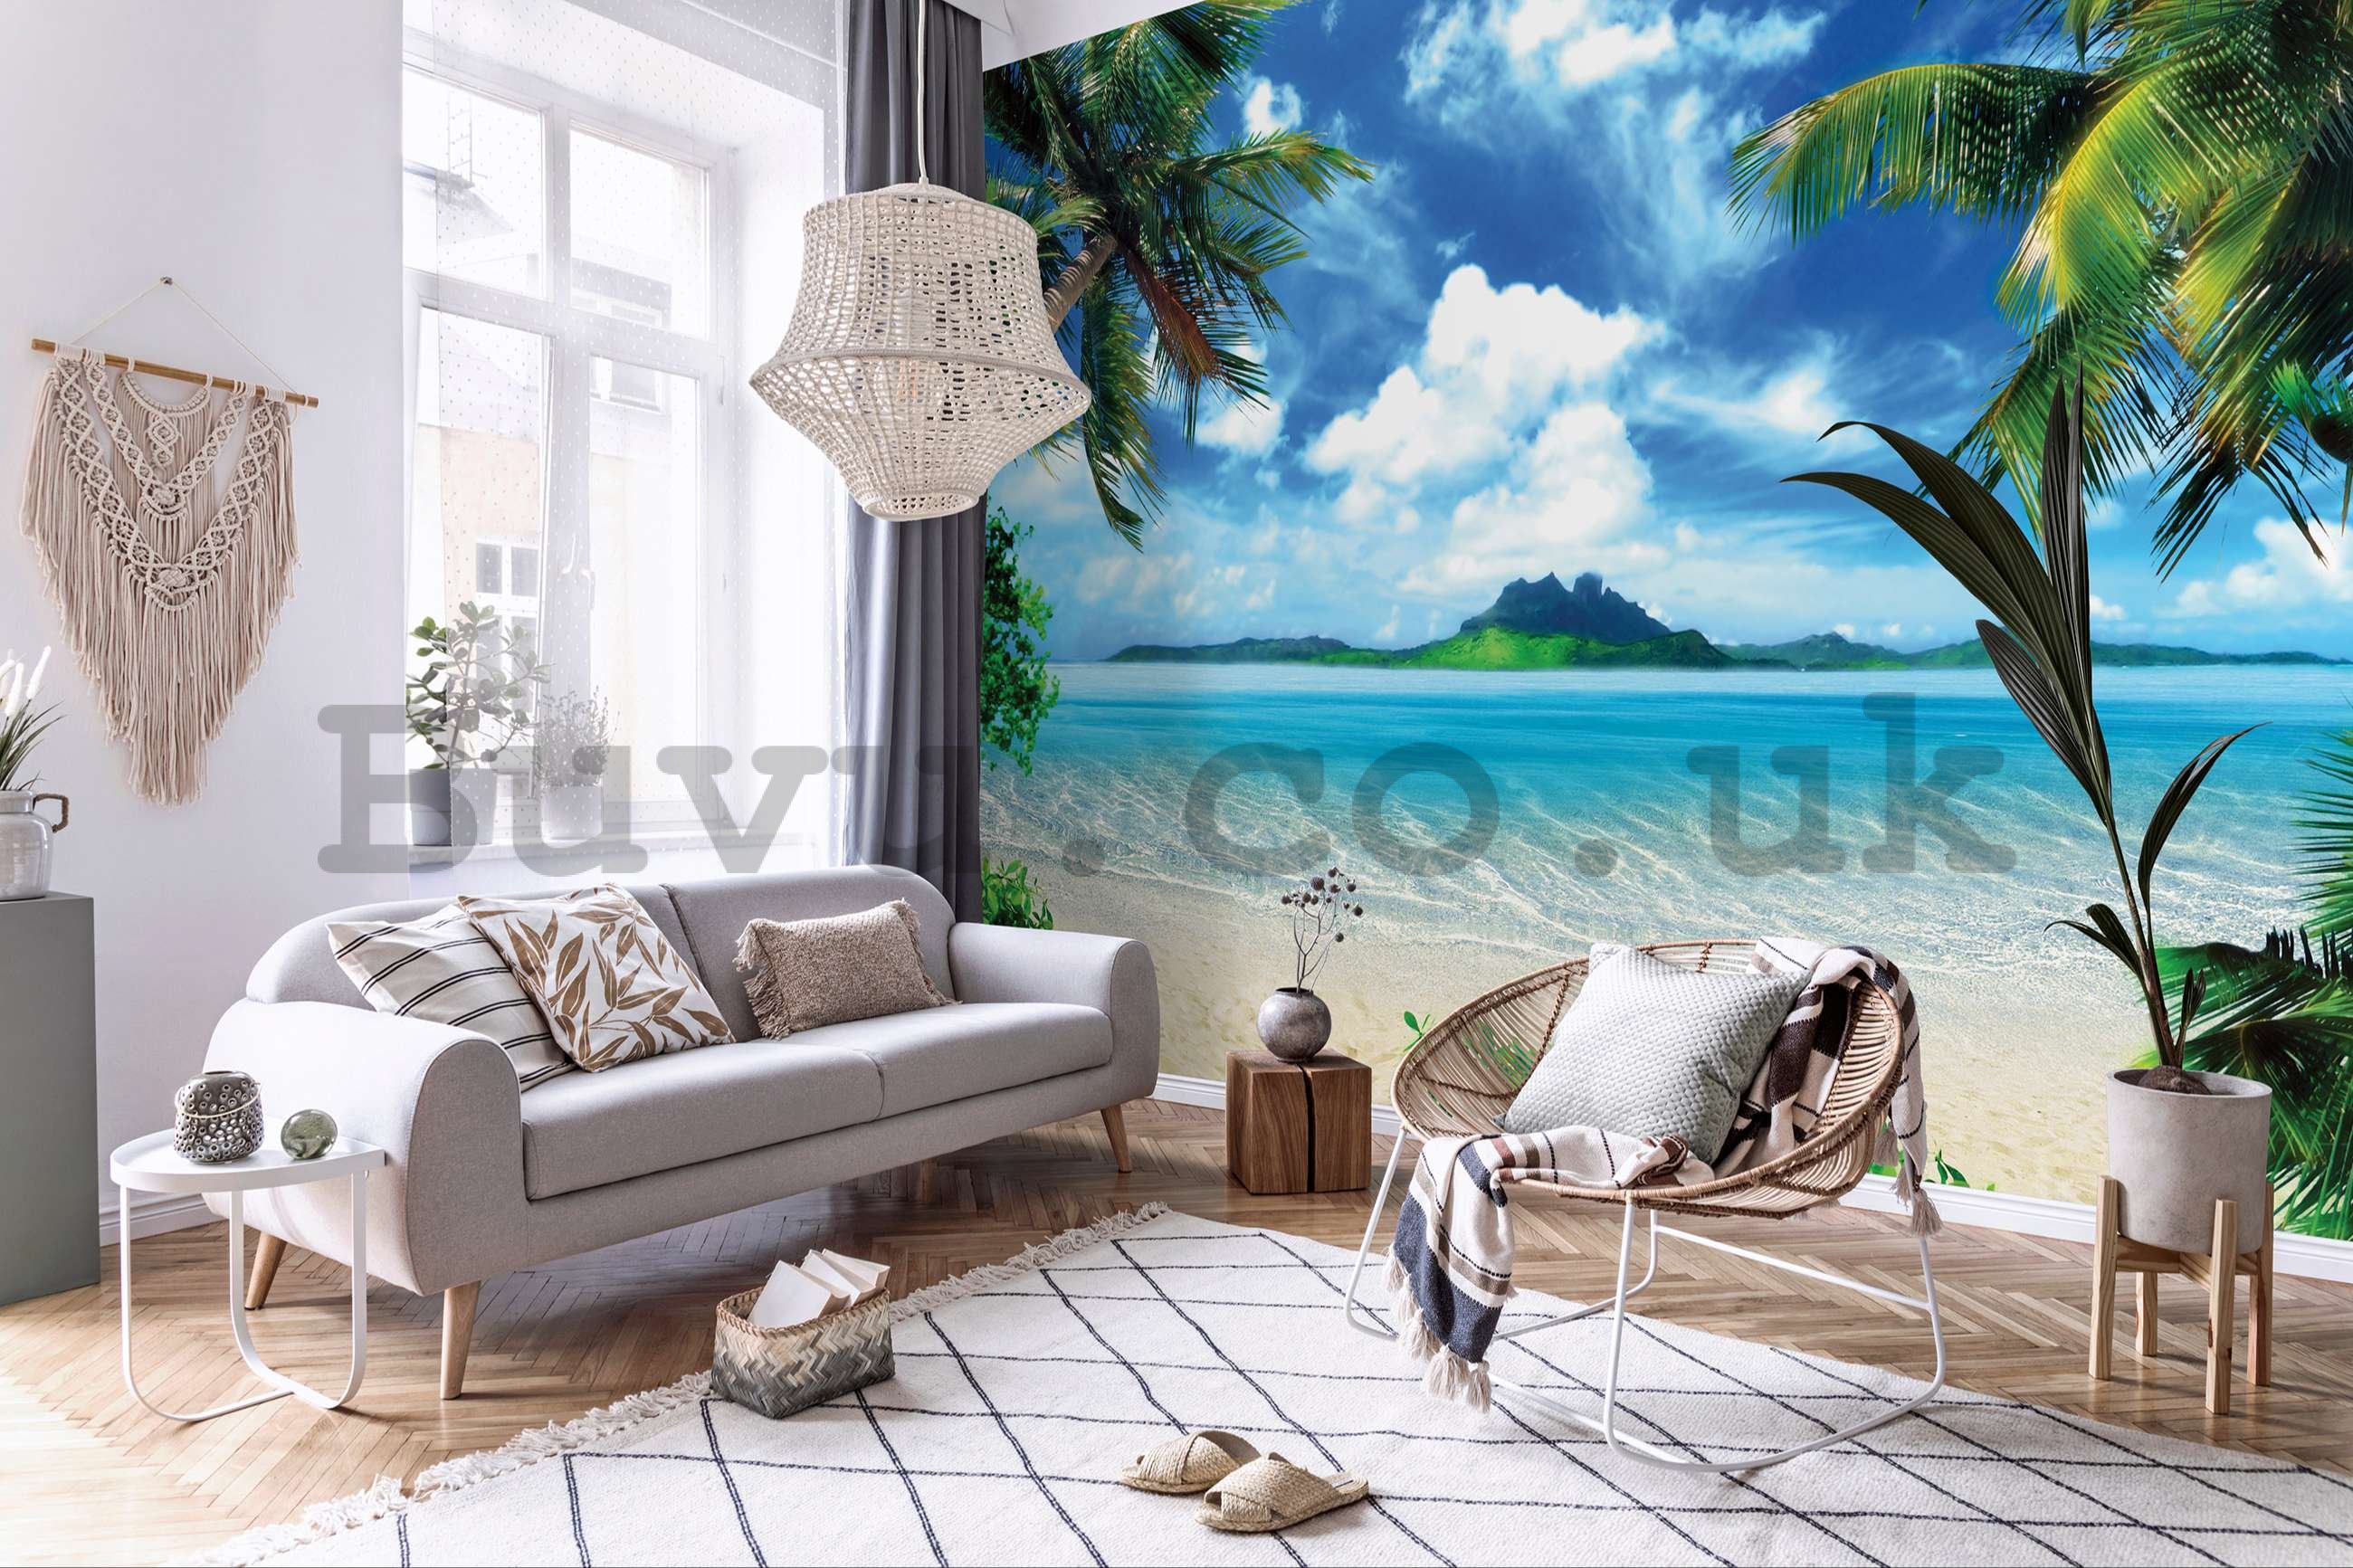 Wall mural vlies: In a tropical paradise - 416x254 cm